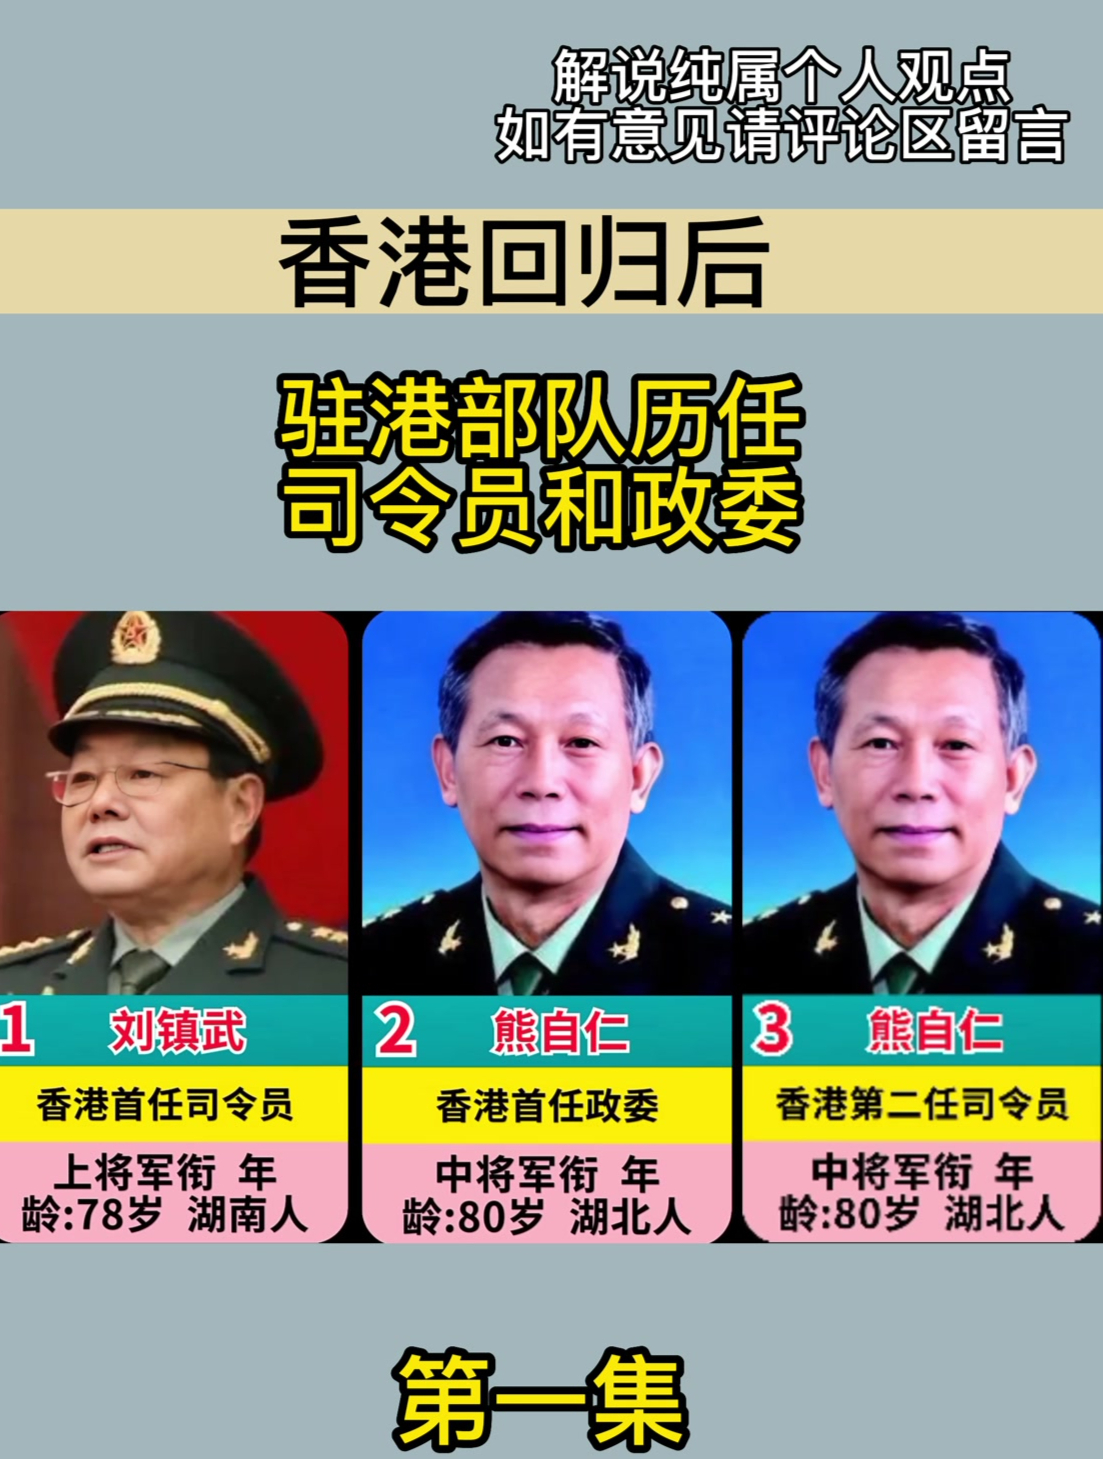 香港回归后,驻港部队历任司令员和政委!